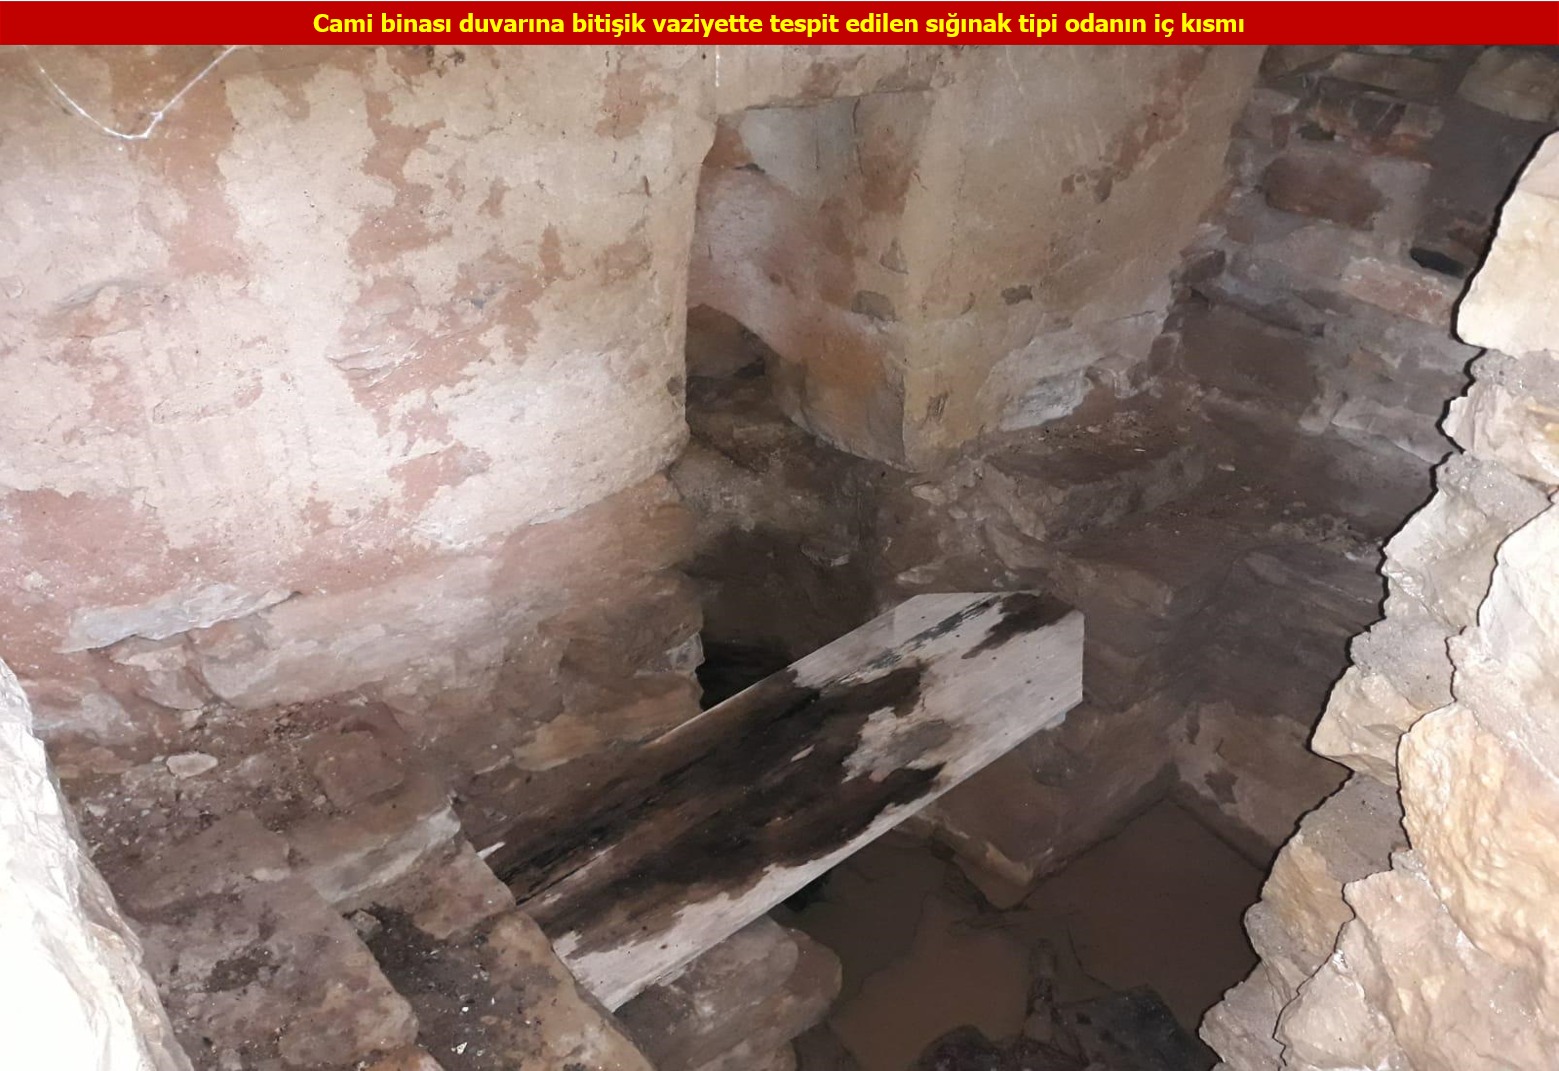 PKKlılar caminin altını kış sığınağı yapmışlar1